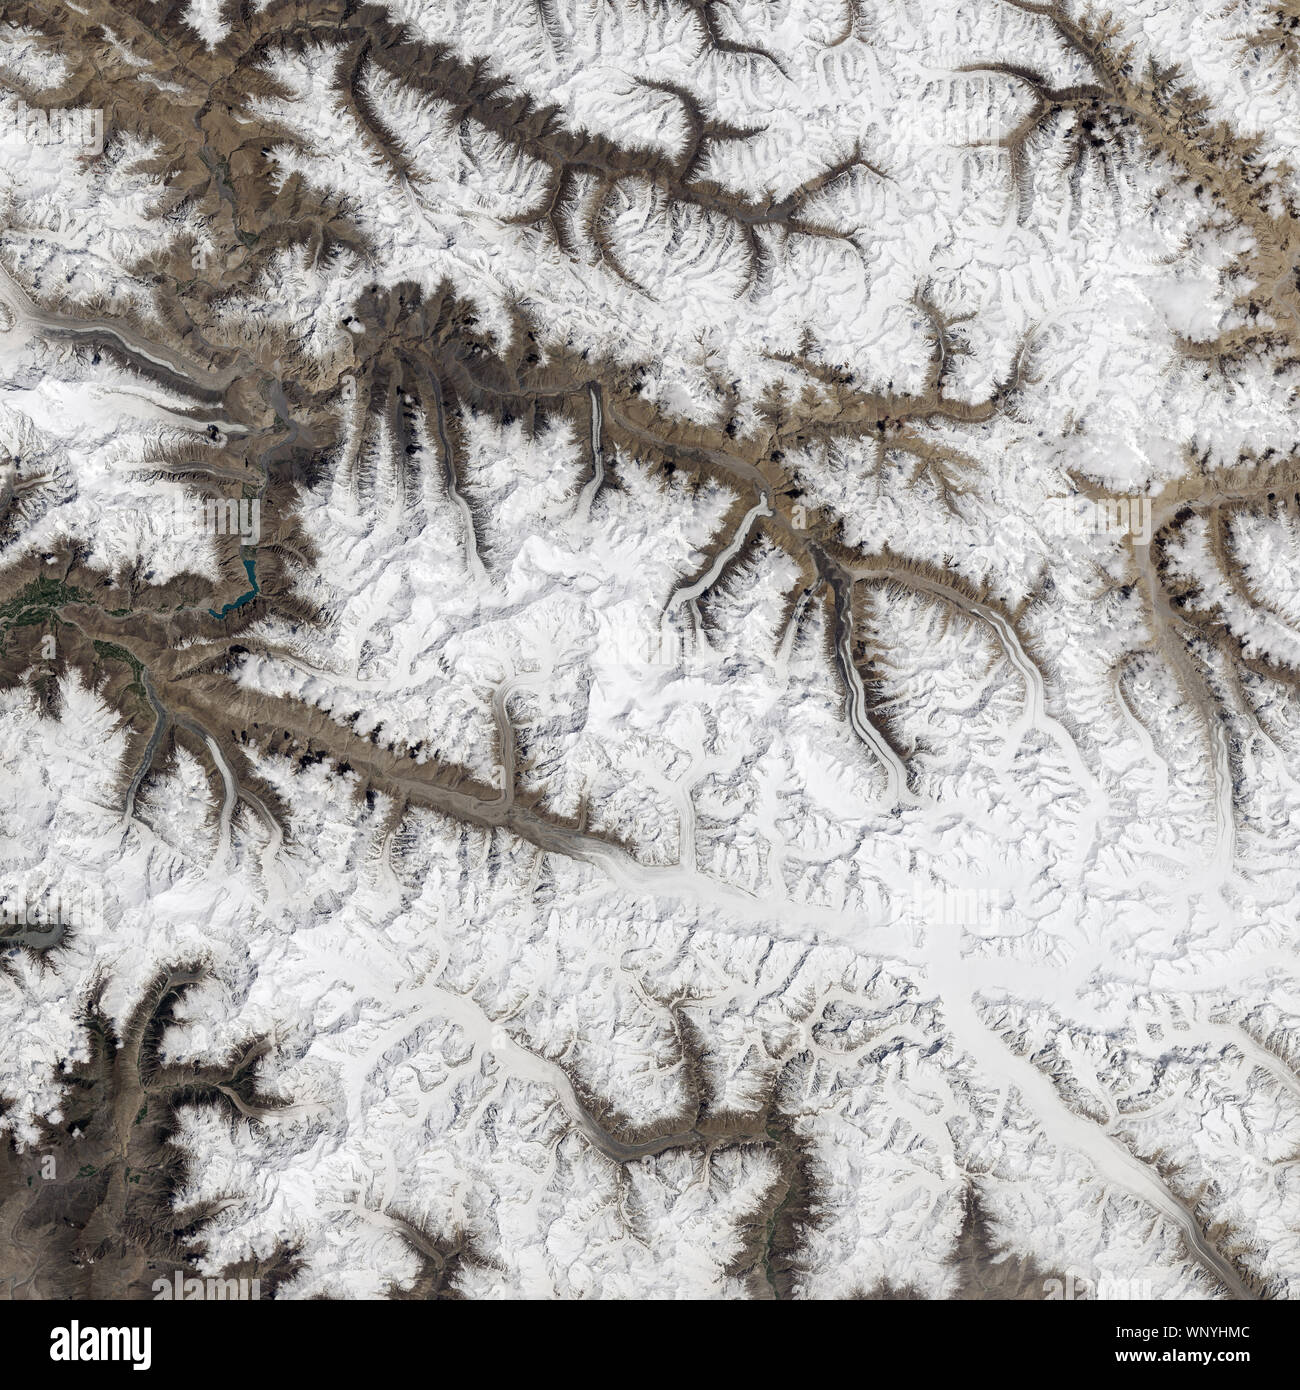 Varios glaciares que desembocan en el río Shimshal, en el norte de Pakistán, por la NASA/Jesse Allen/DPA Foto de stock